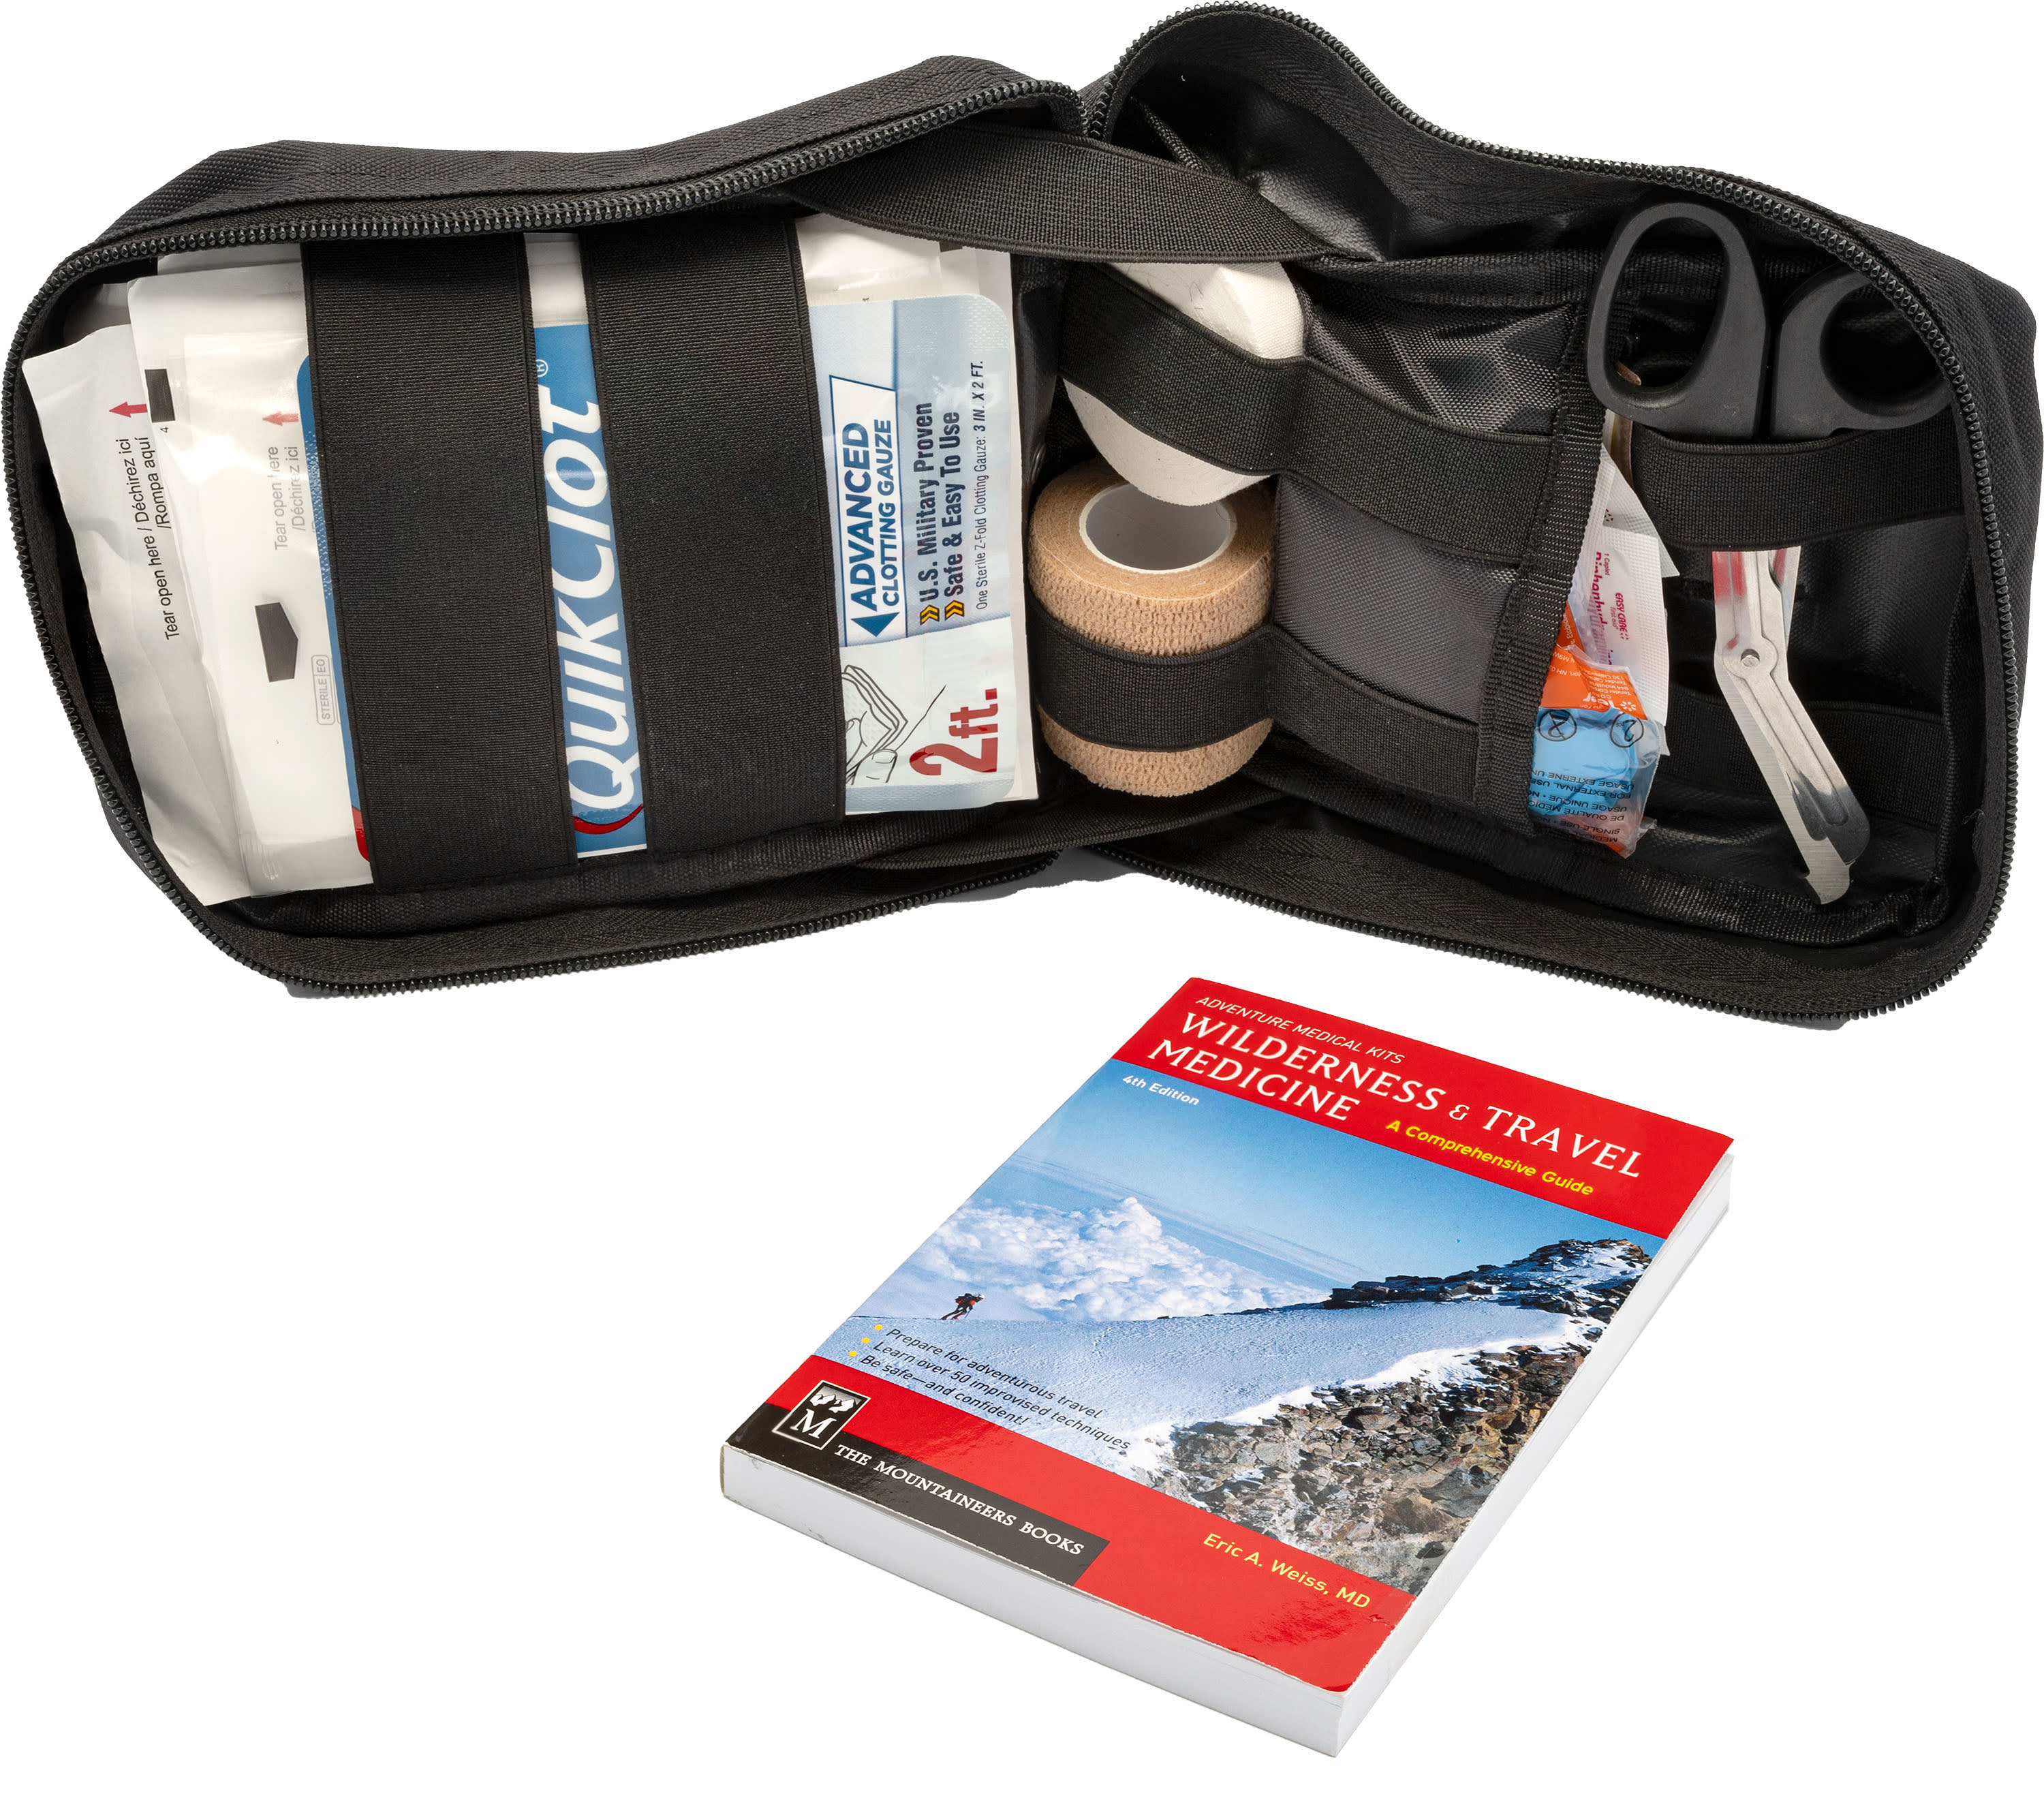 Adventure Medical Kit MOLLE Trauma Kit 1.0 